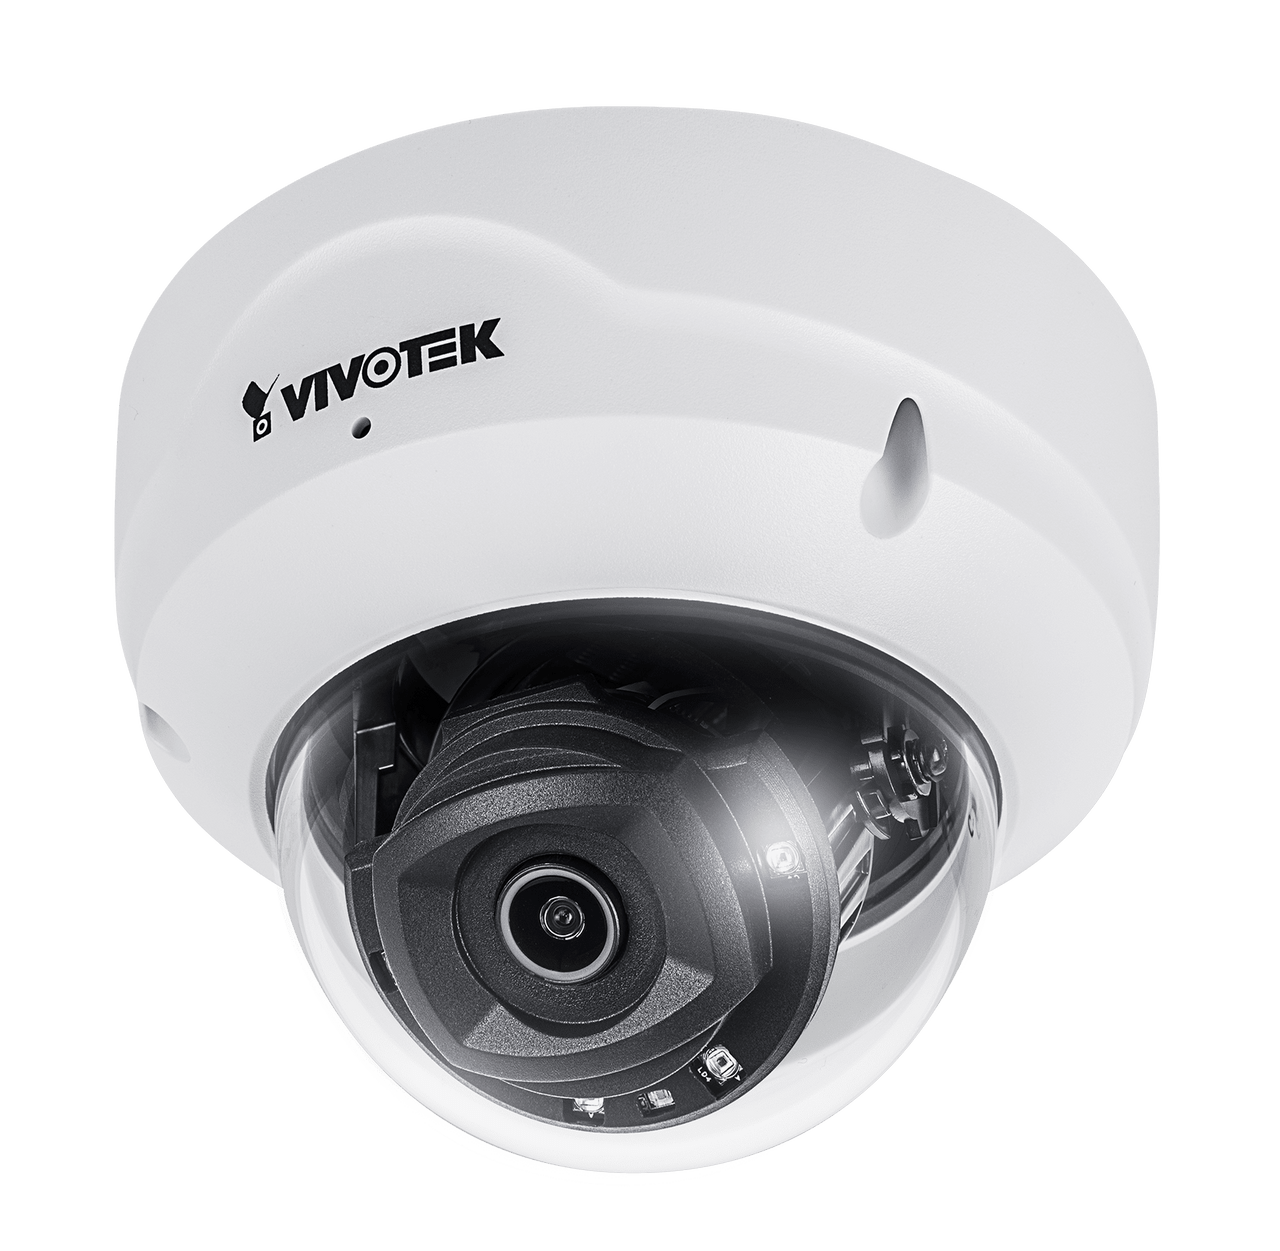 Vivotek FD9189-H-V2 5MP 2.8mm Indoor Dome Network Camera